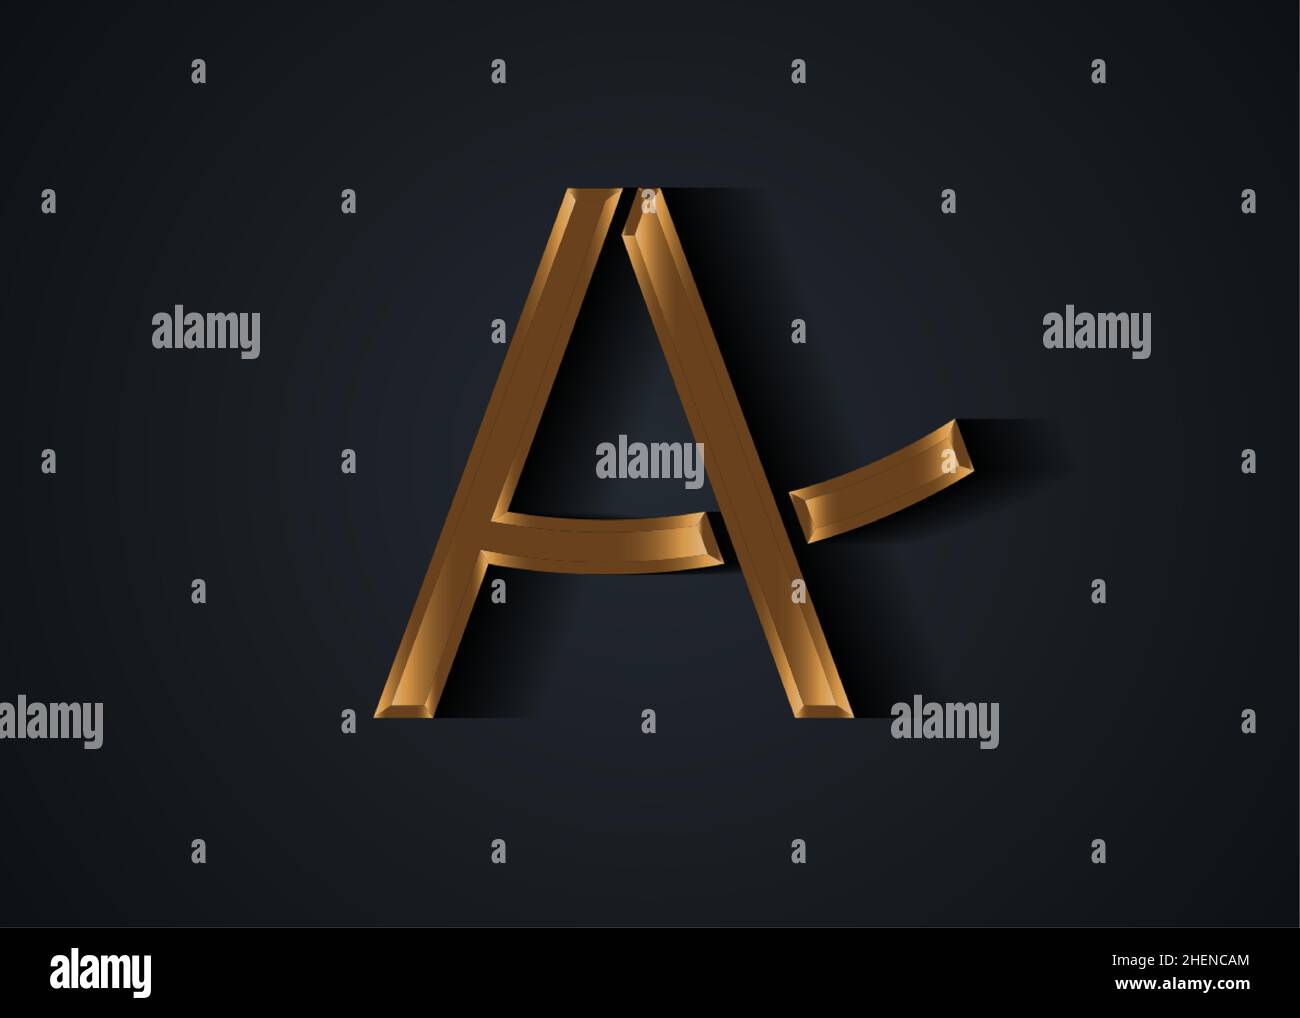 Lettera A simbolo stilizzato 3D dorato con ombra, modello di logo minimal oro. Icona della lettera vettoriale isolata su sfondo nero Illustrazione Vettoriale